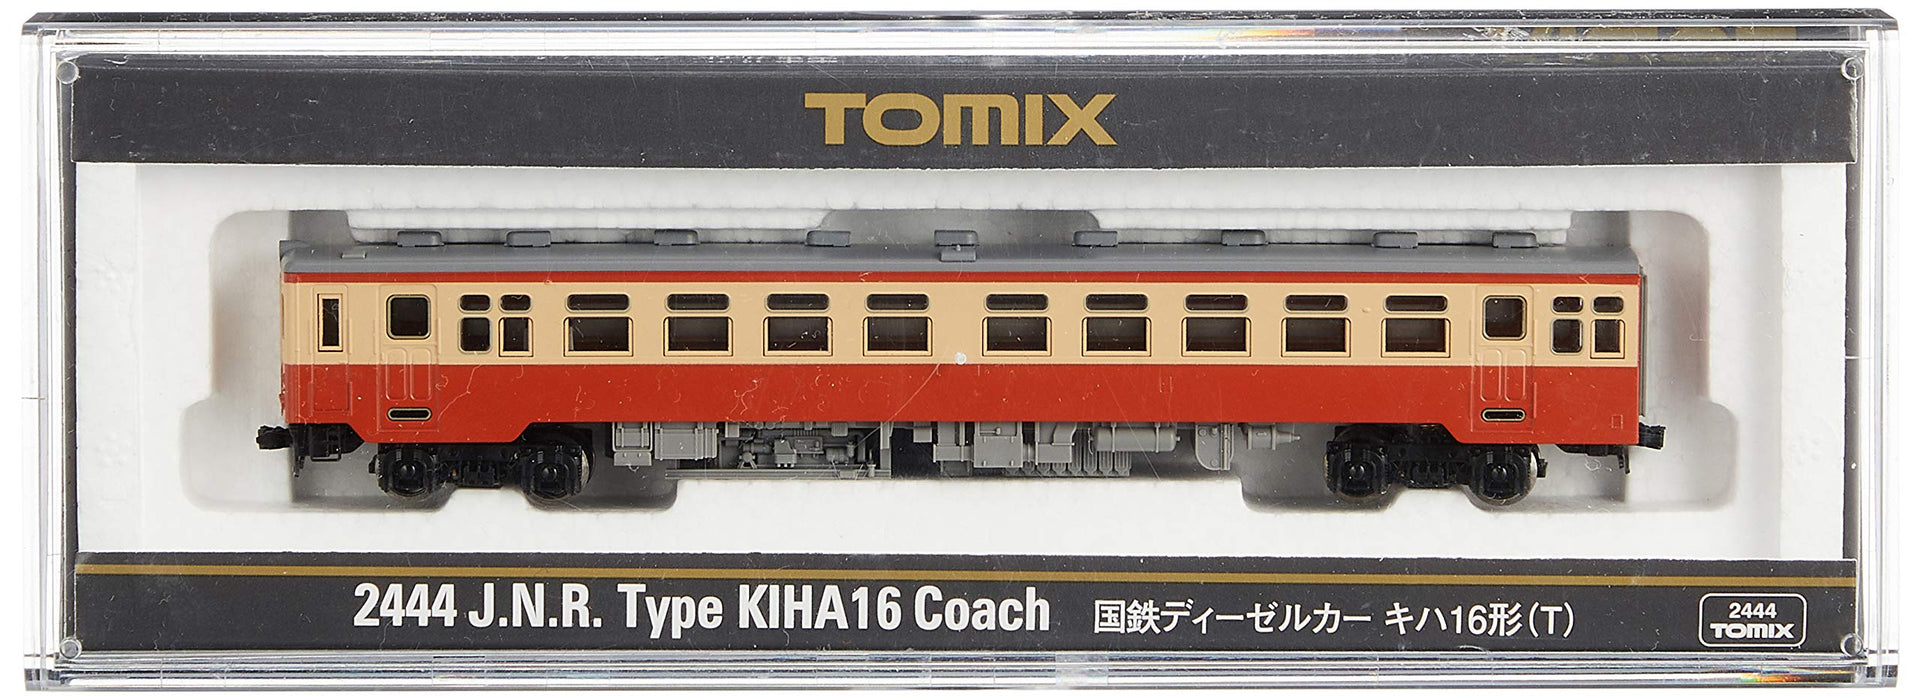 Tomytec Tomix N Gauge Kiha16 T 2444 Diesel Railway Model Car